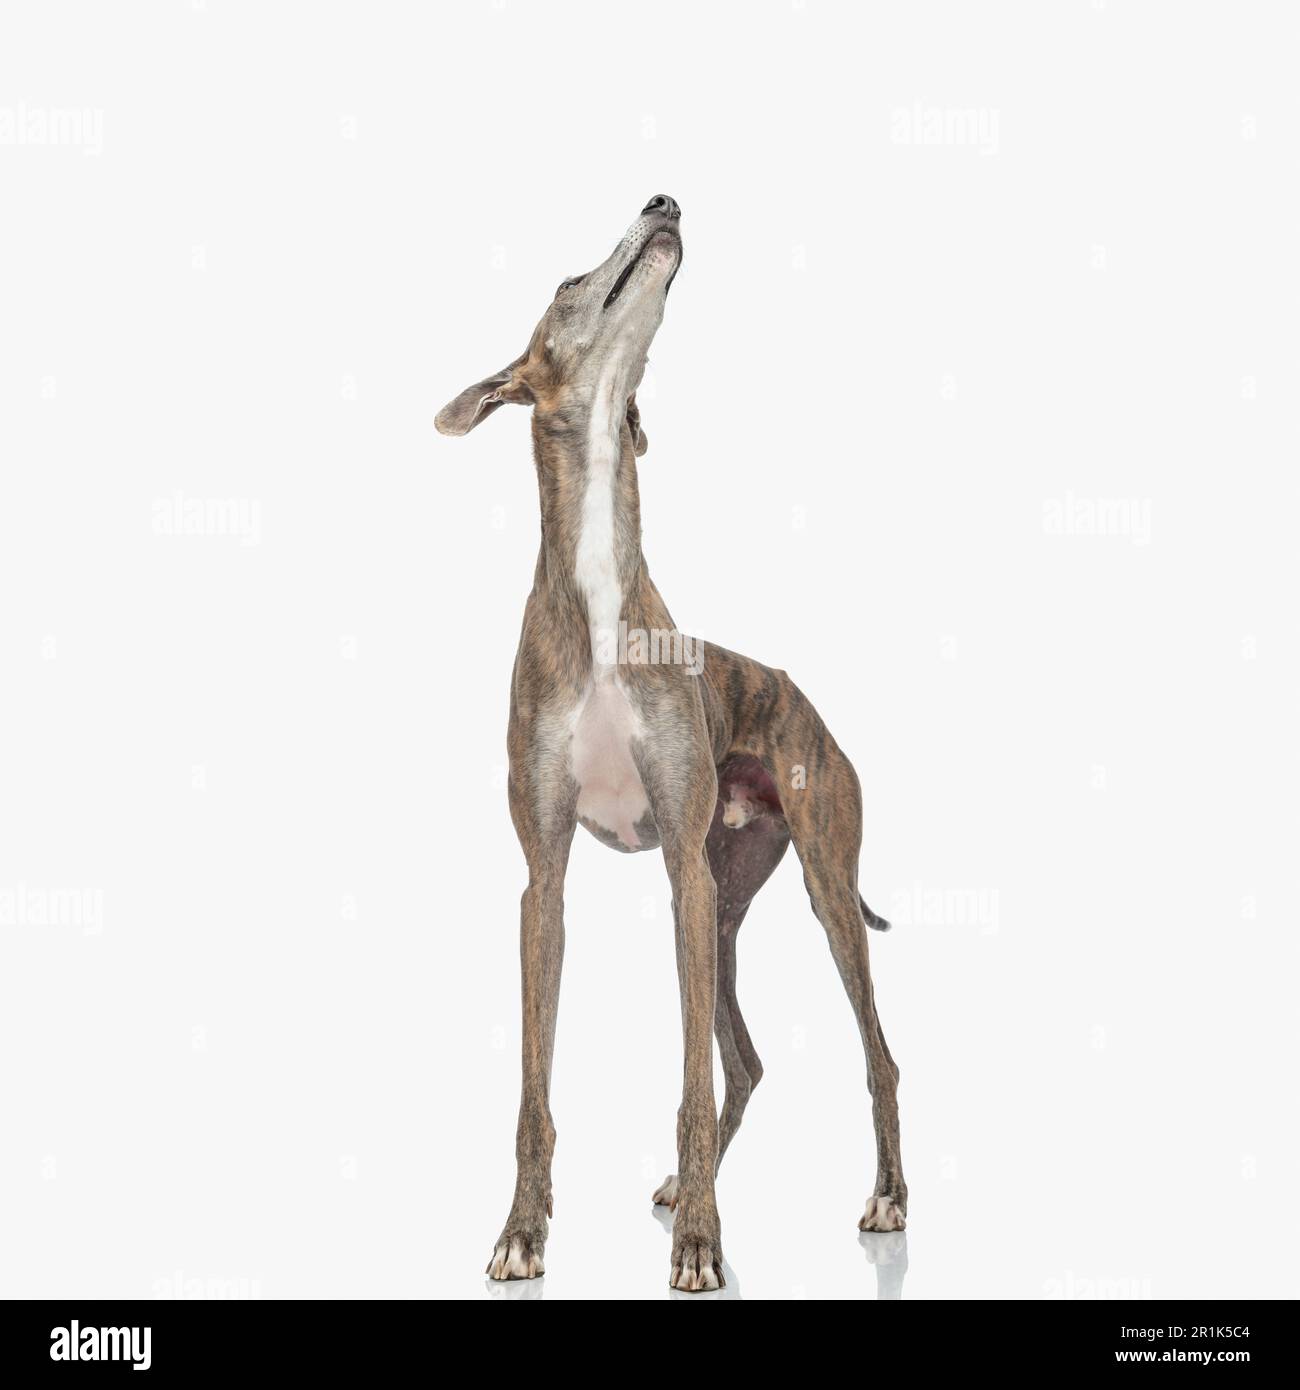 Eifriger, dünner Windhund mit dünnen Beinen, der aufblickt und neugierig ist, während er im Studio vor weißem Hintergrund steht Stockfoto